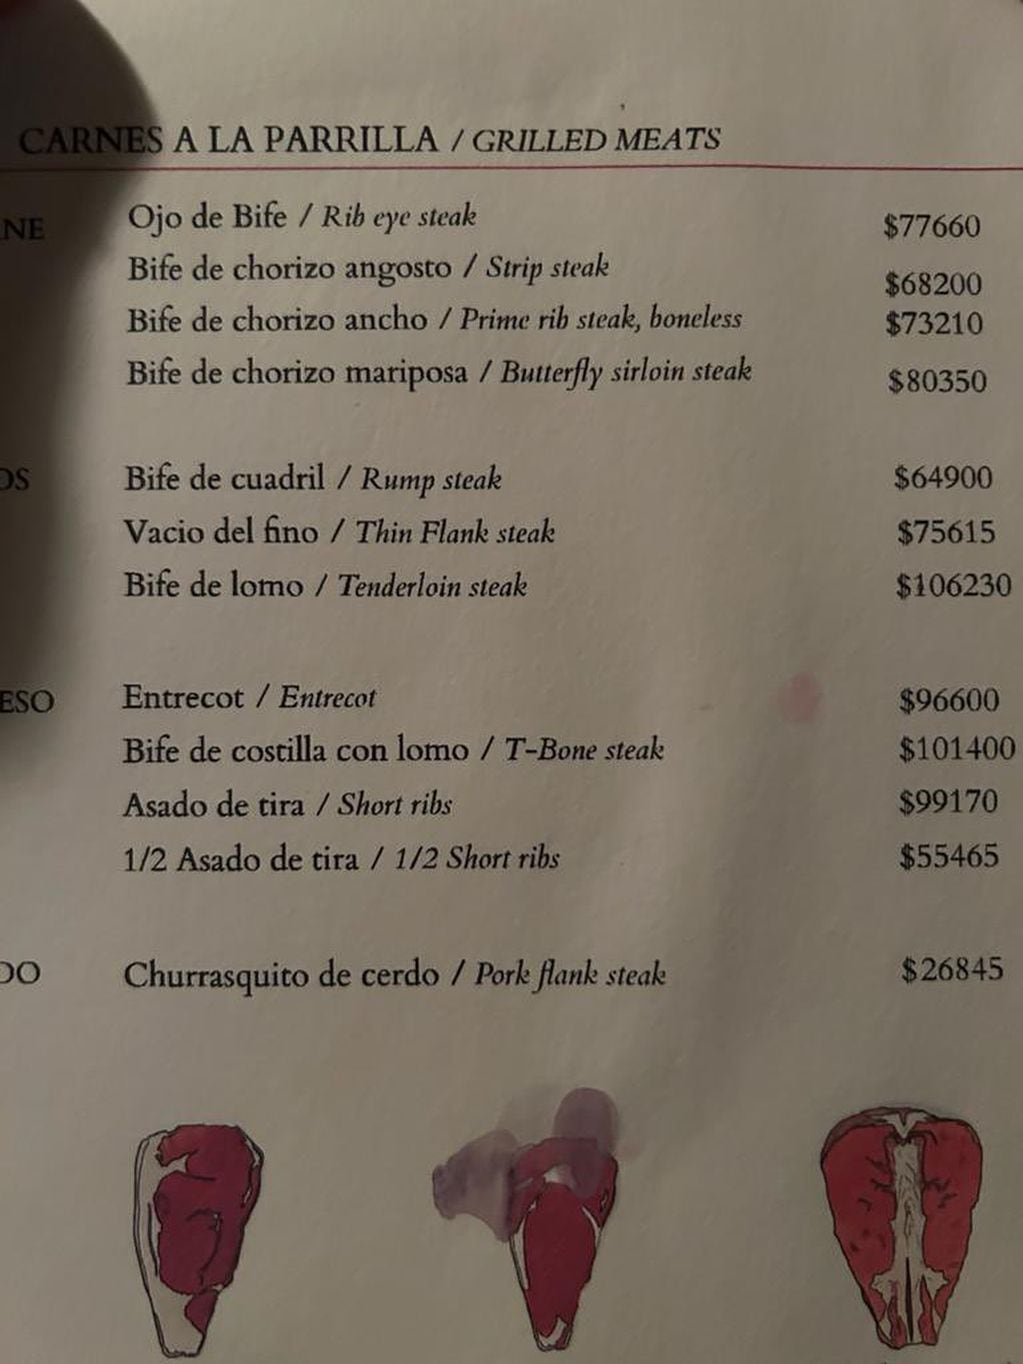 Cuánto cuesta comer en el restaurante "Don Julio", la parrilla favorita de Lionel Messi